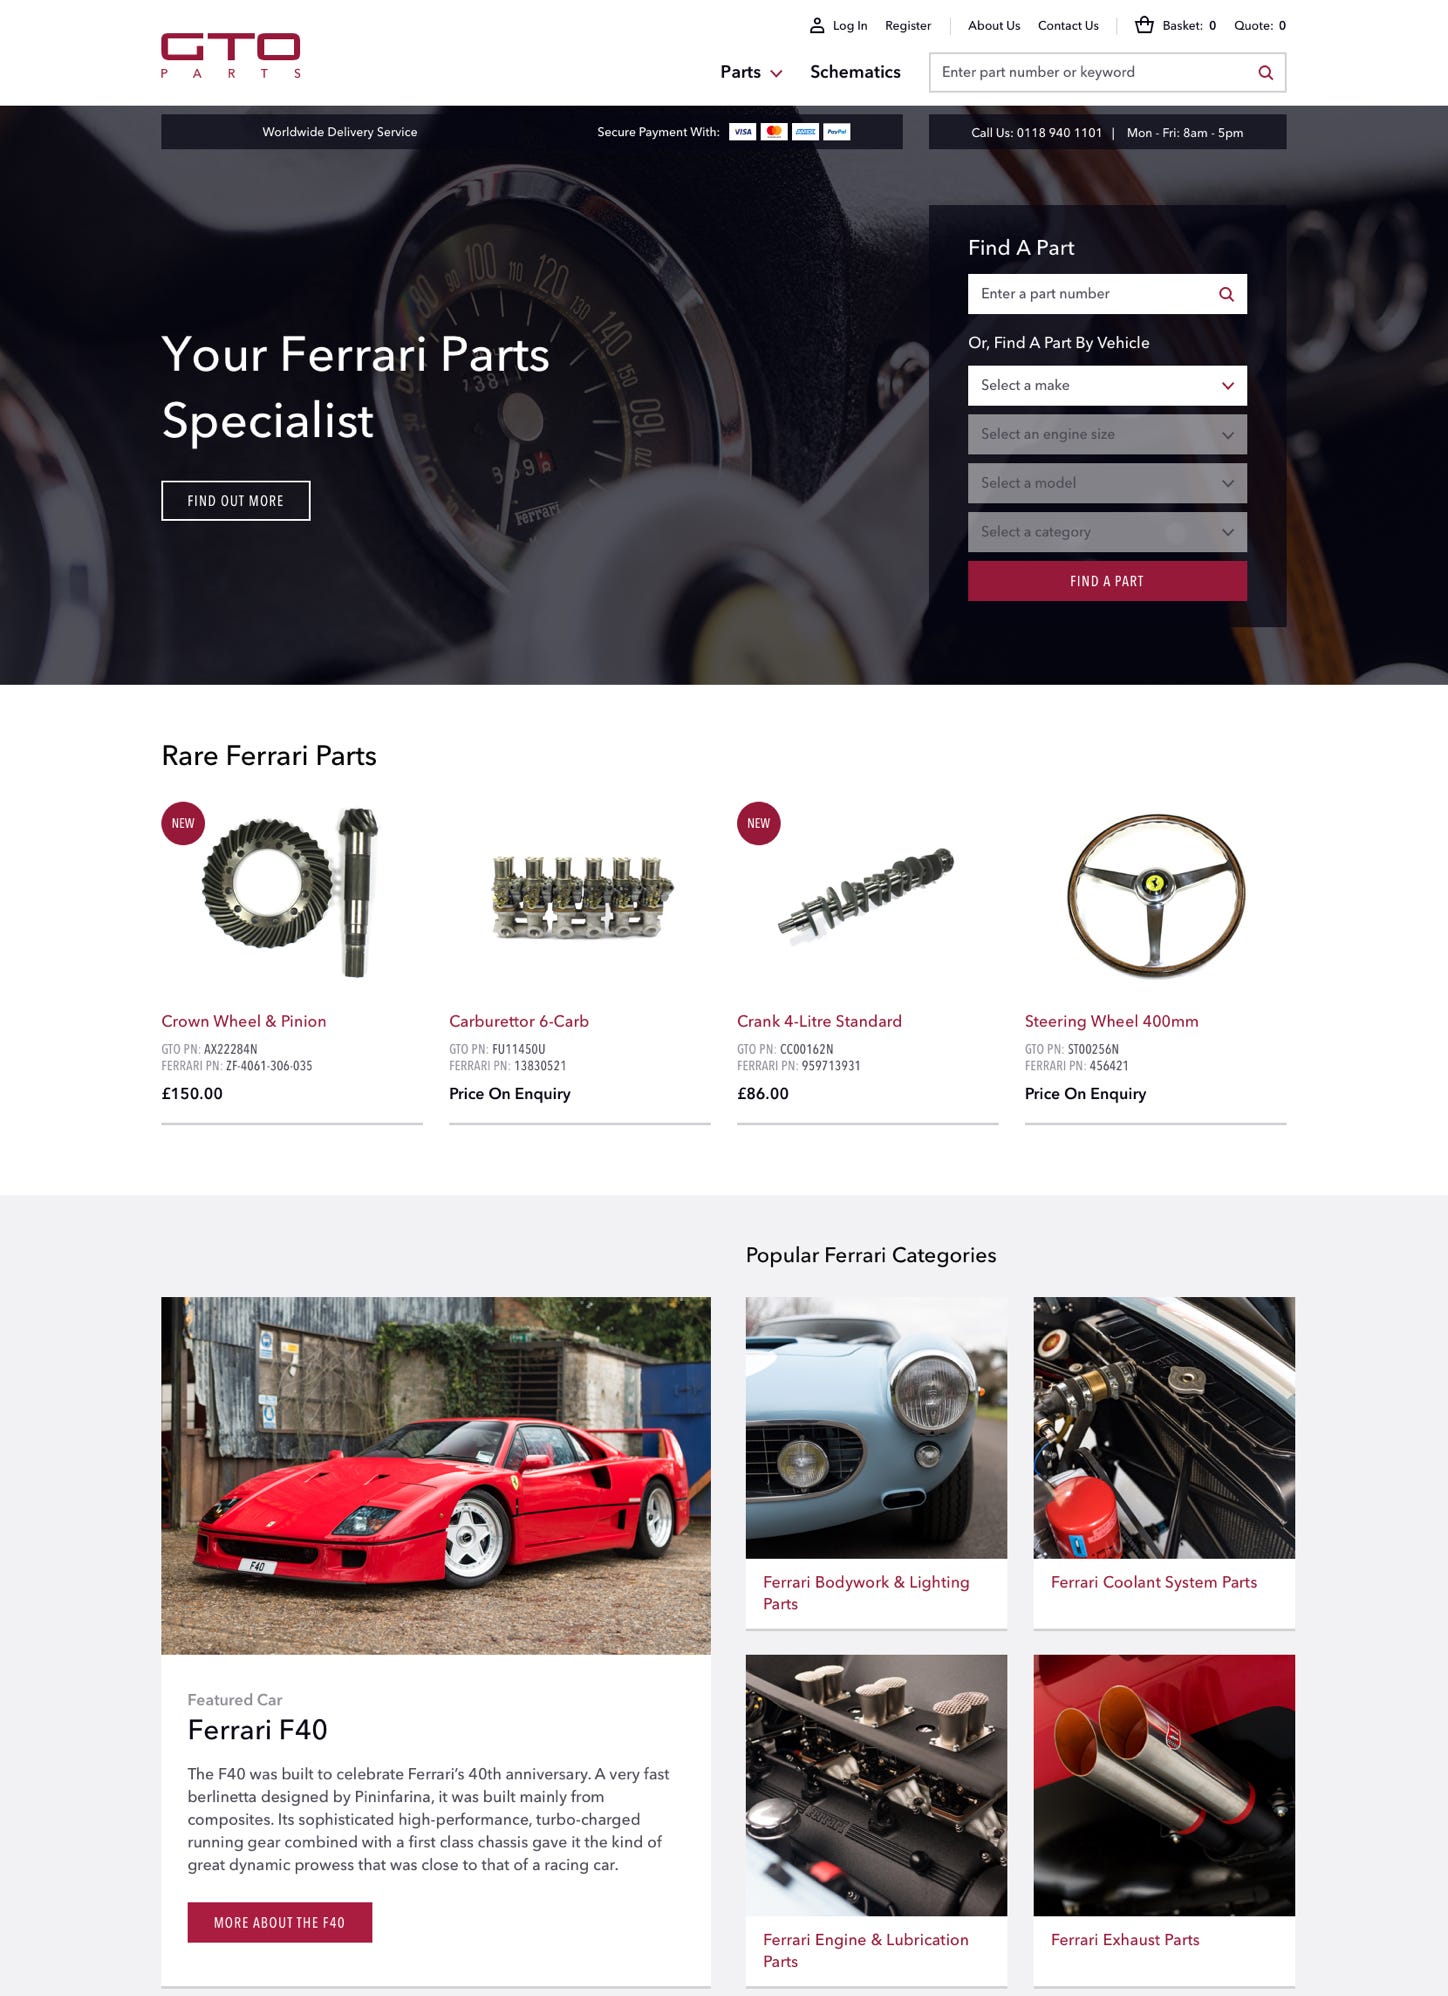 GTO Engineering homepage desktop designs